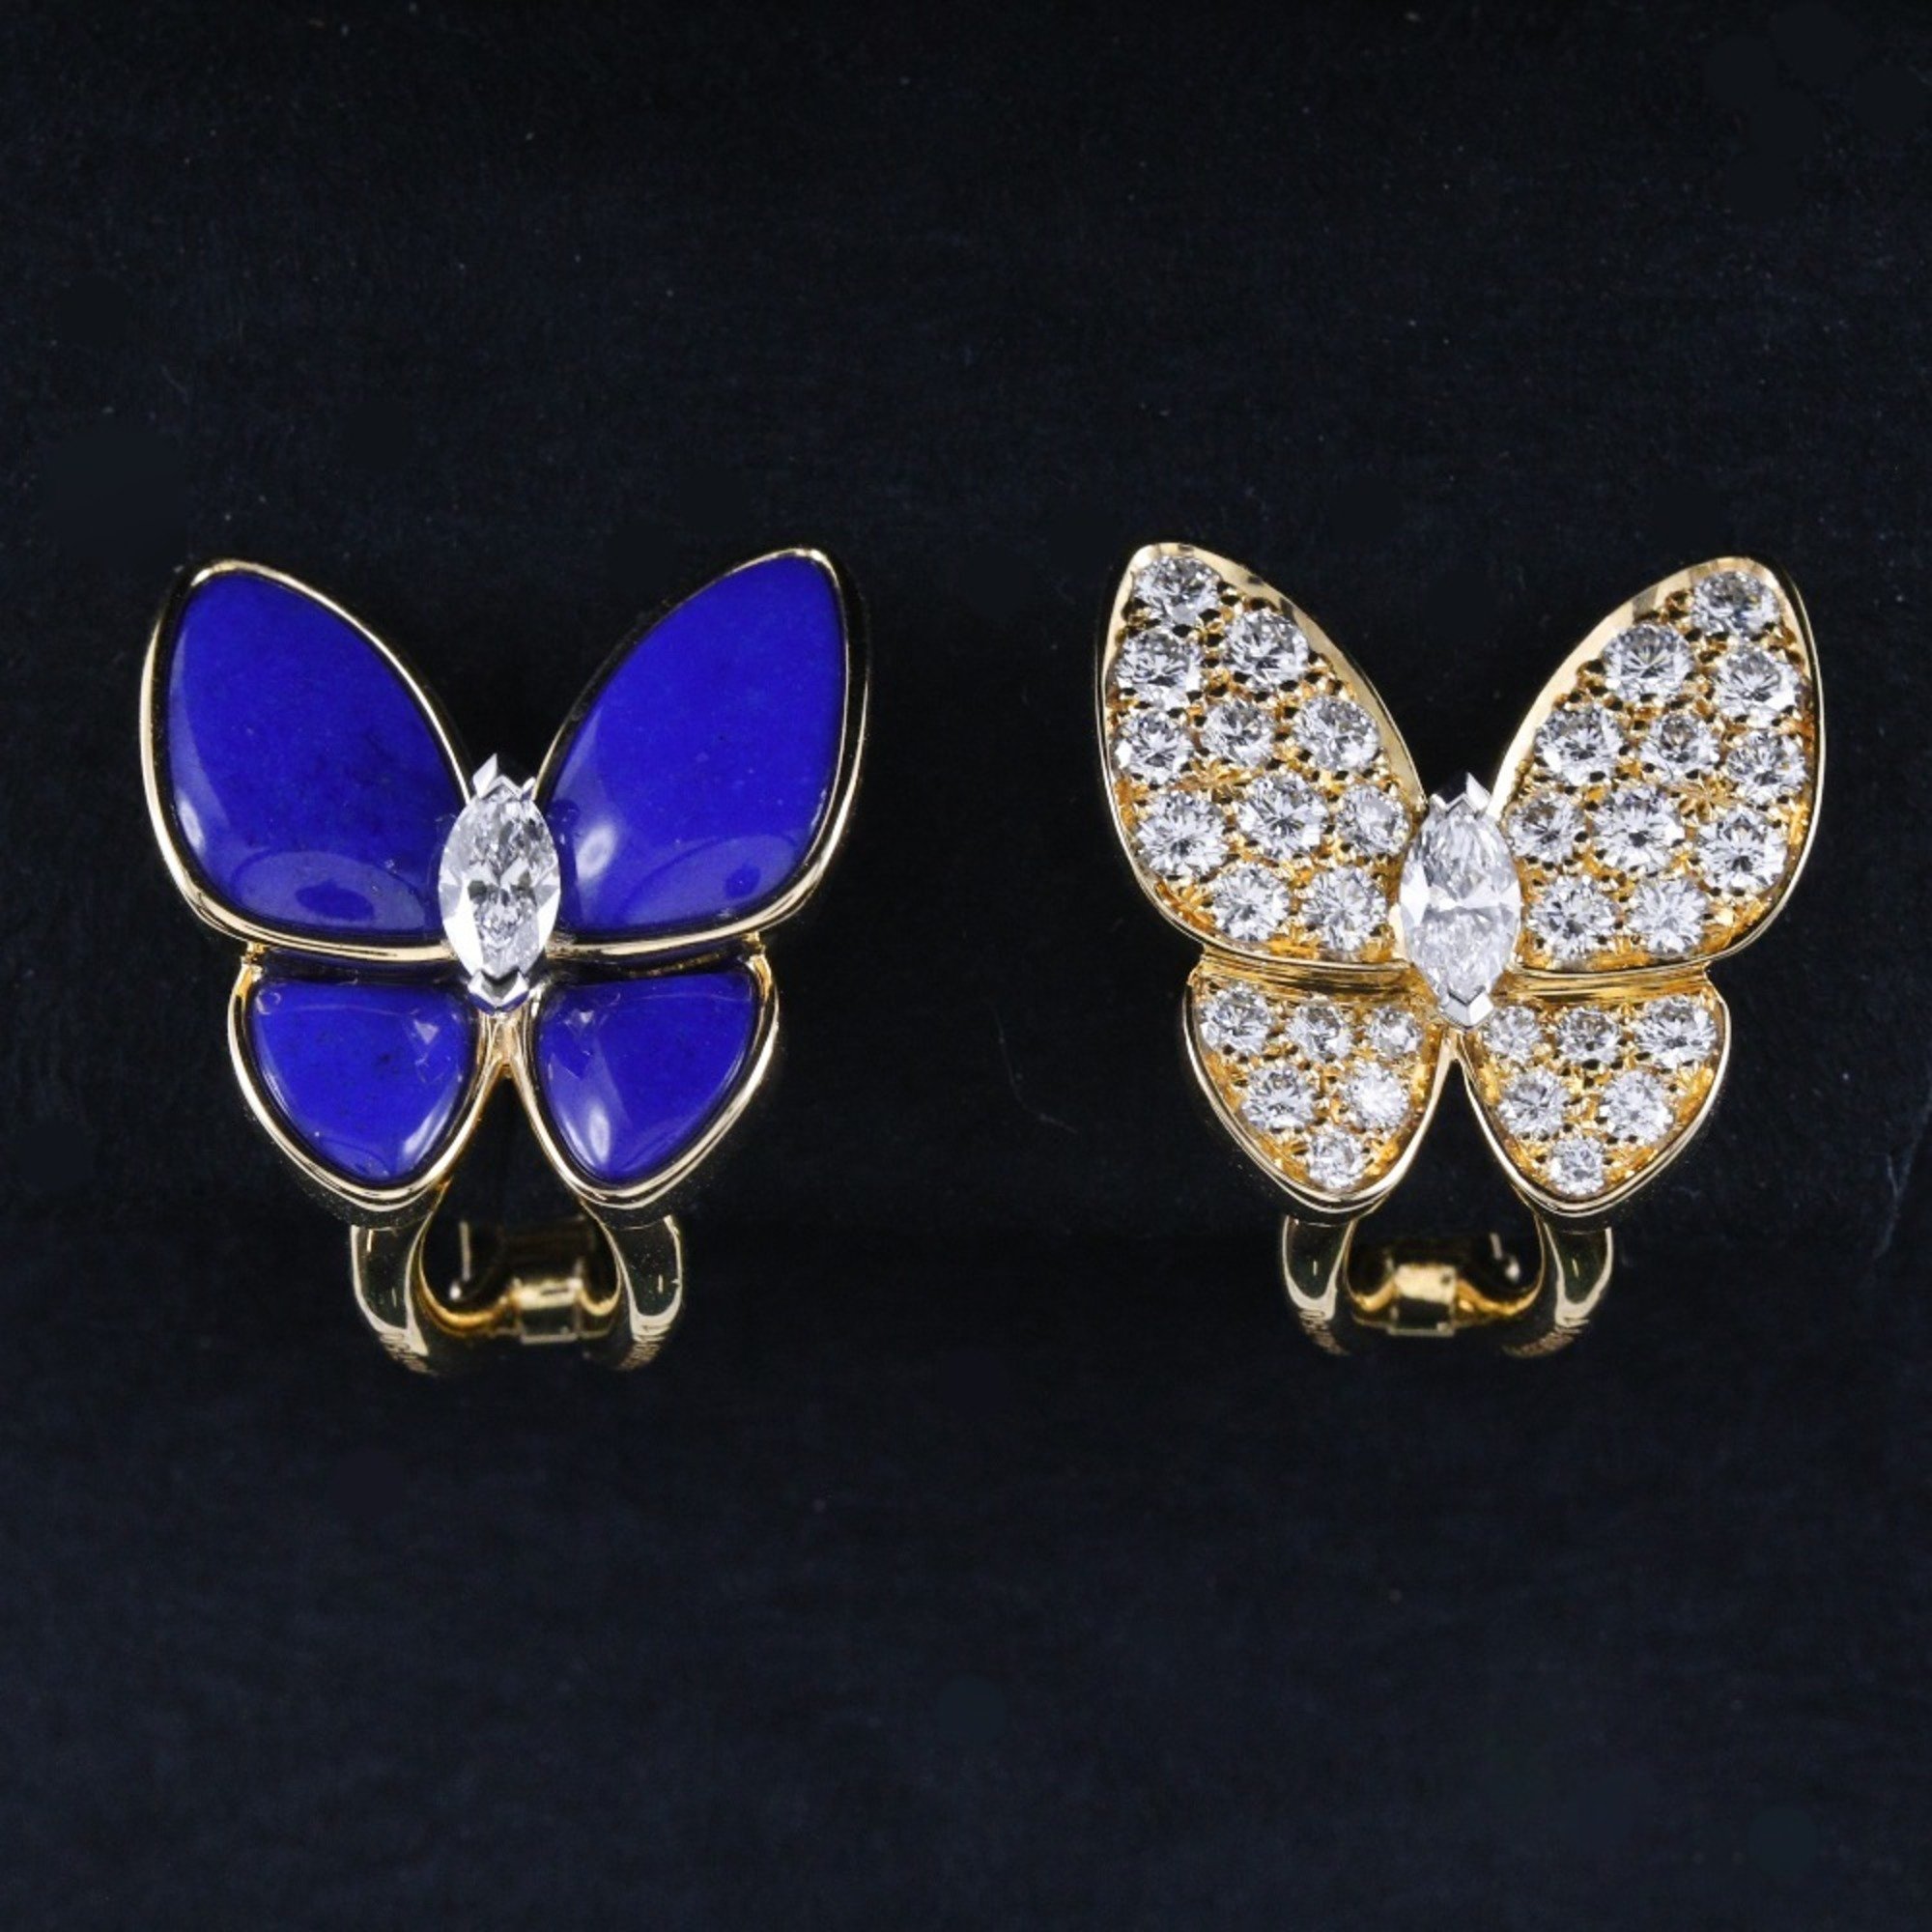 Van Cleef & Arpels De Papillon Earrings VCARP3DO00 K18 Yellow Gold x Diamond Lapis Lazuli Approx. 9.1g dupapillon Women's